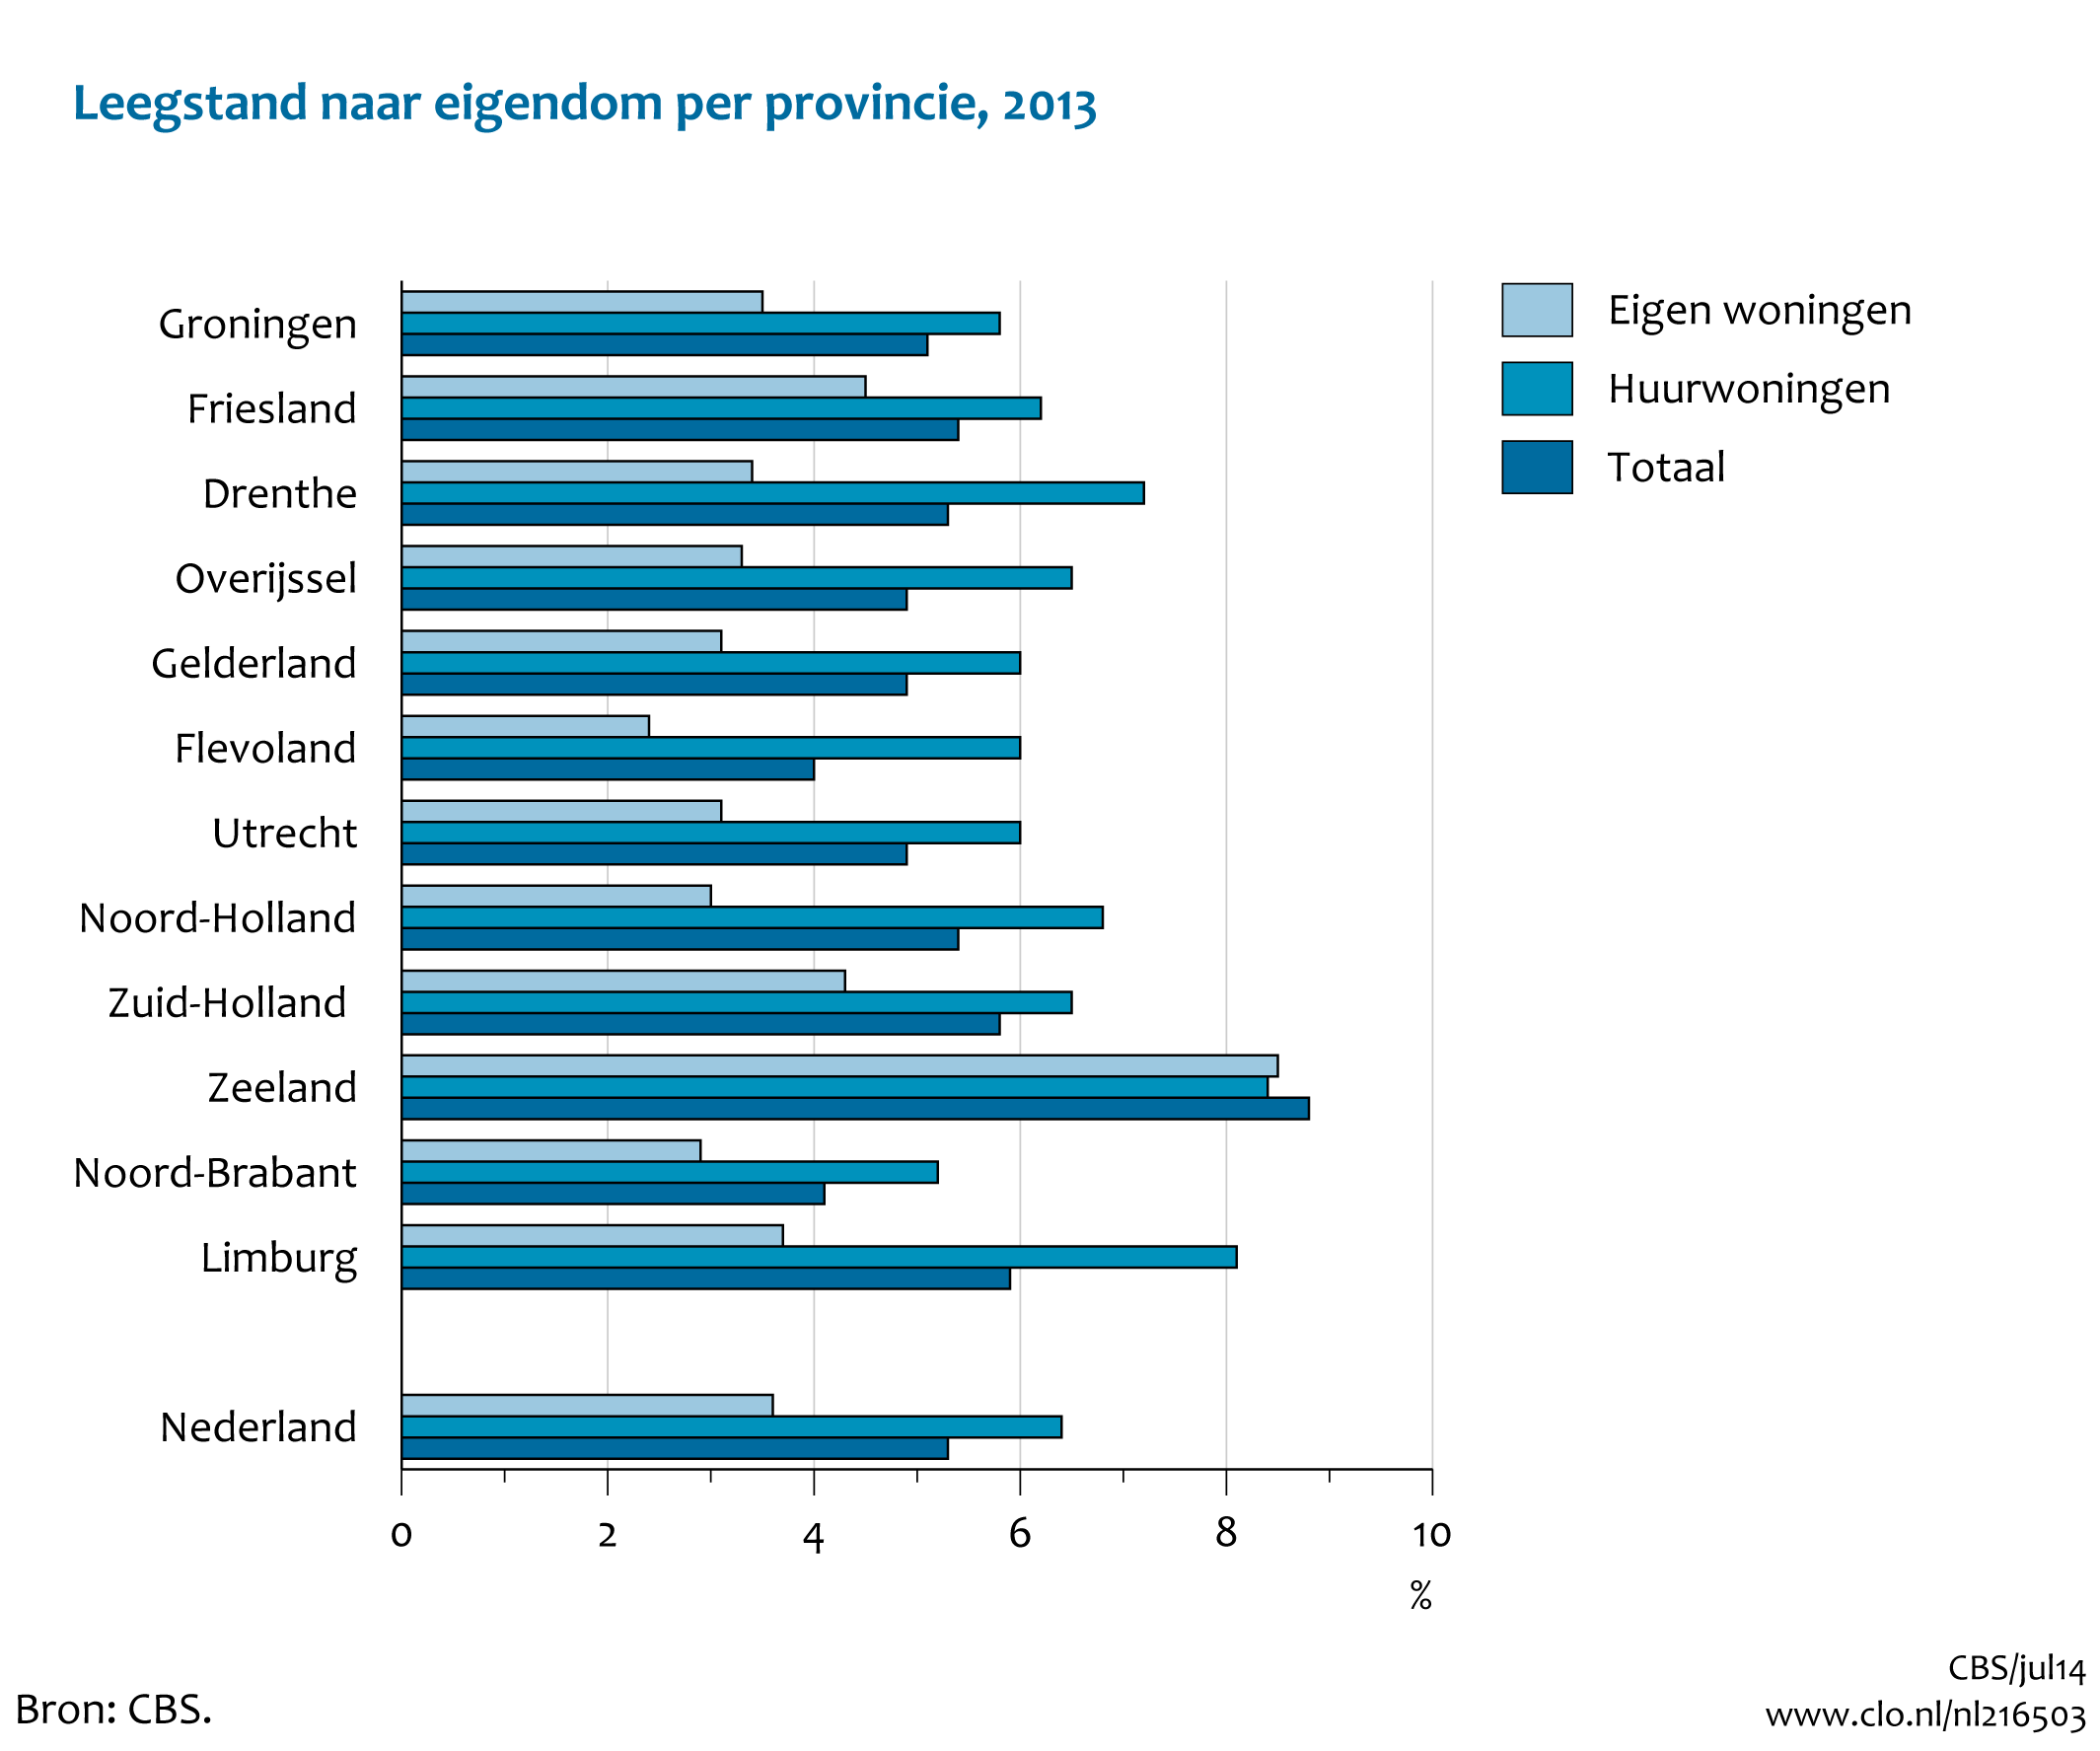 Figuur  Woningen naar eigendom en leegstand per provincie, 2013. In de rest van de tekst wordt deze figuur uitgebreider uitgelegd.